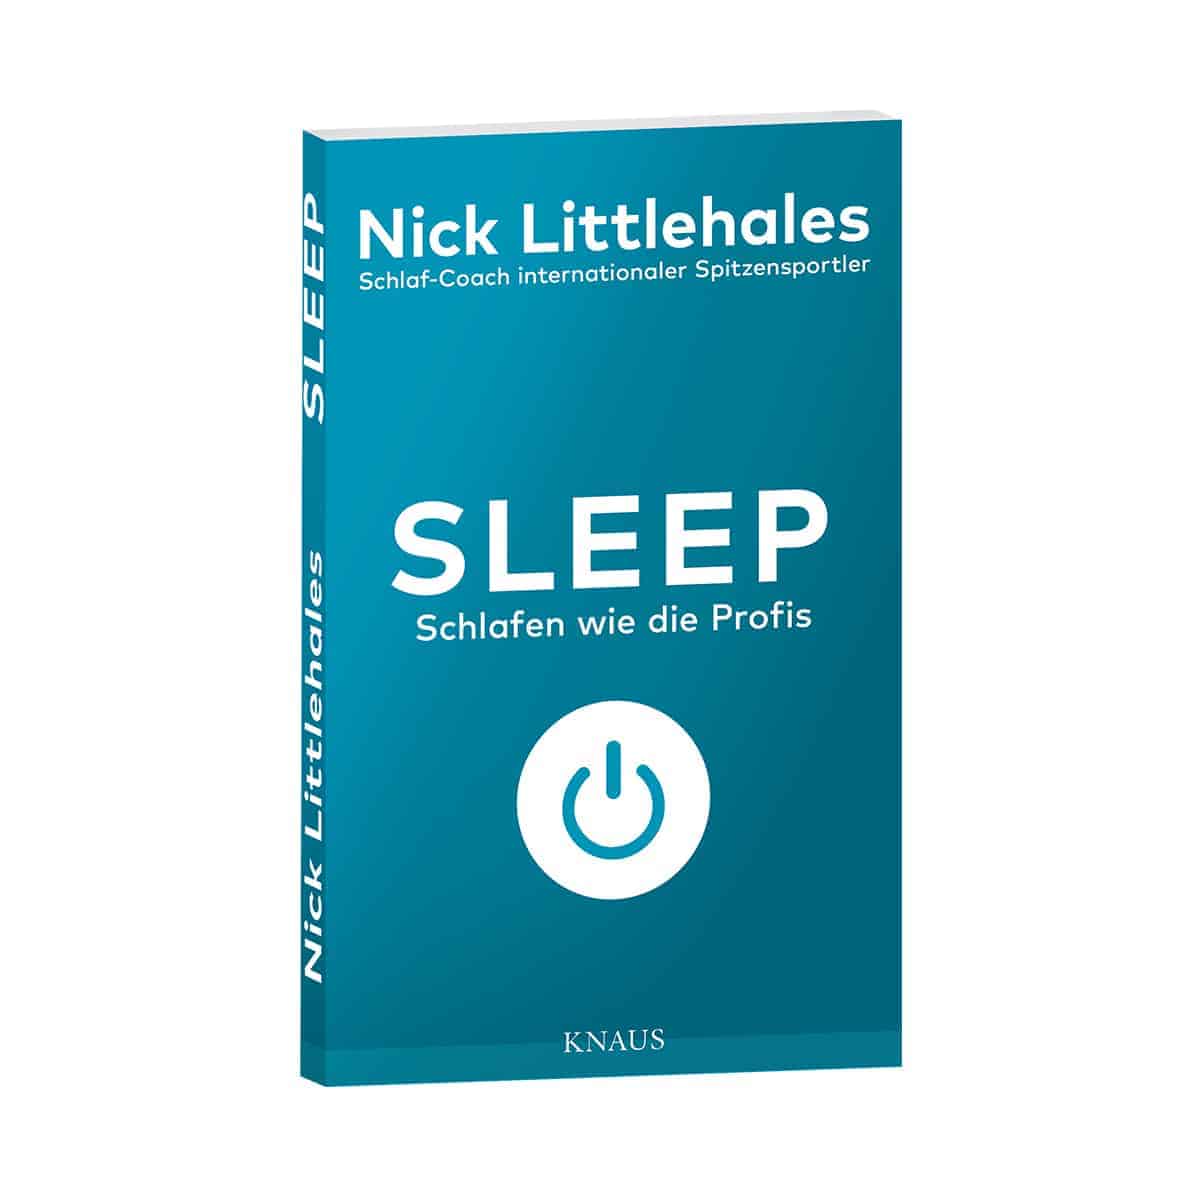 Buch "Sleep" von Nick Littlehales